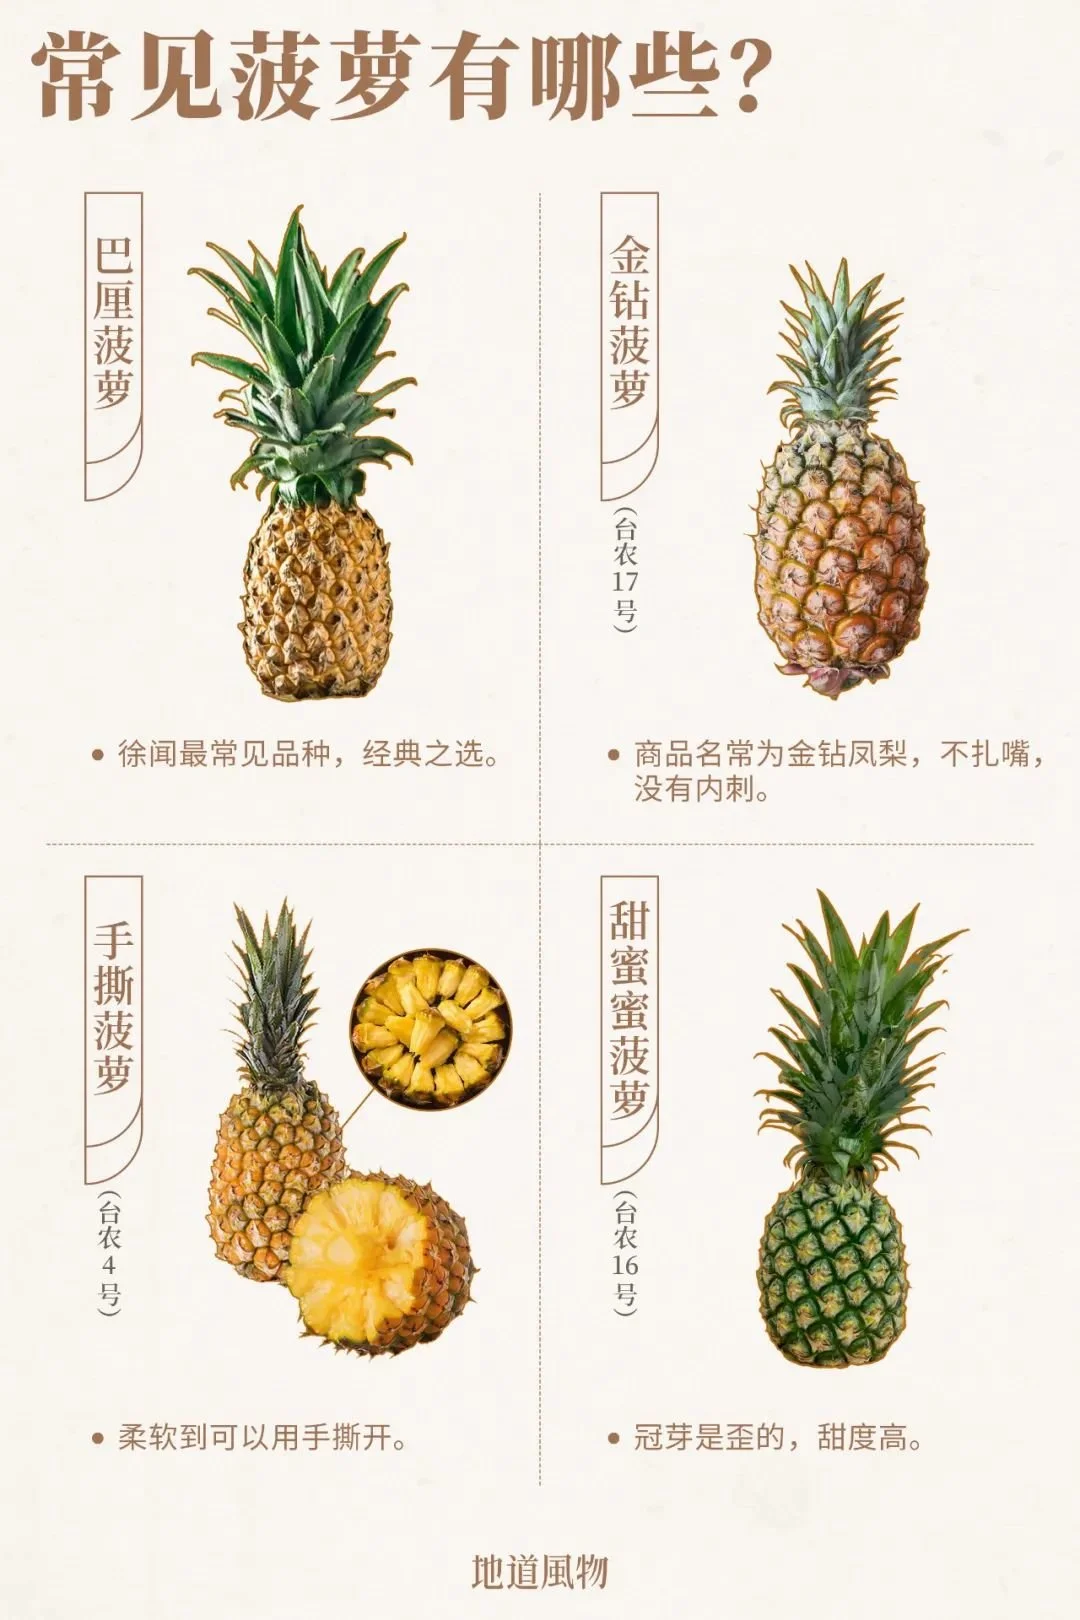 你大概已经知道凤梨就是菠萝，那么常见的菠萝有些种类呢？制图/任东